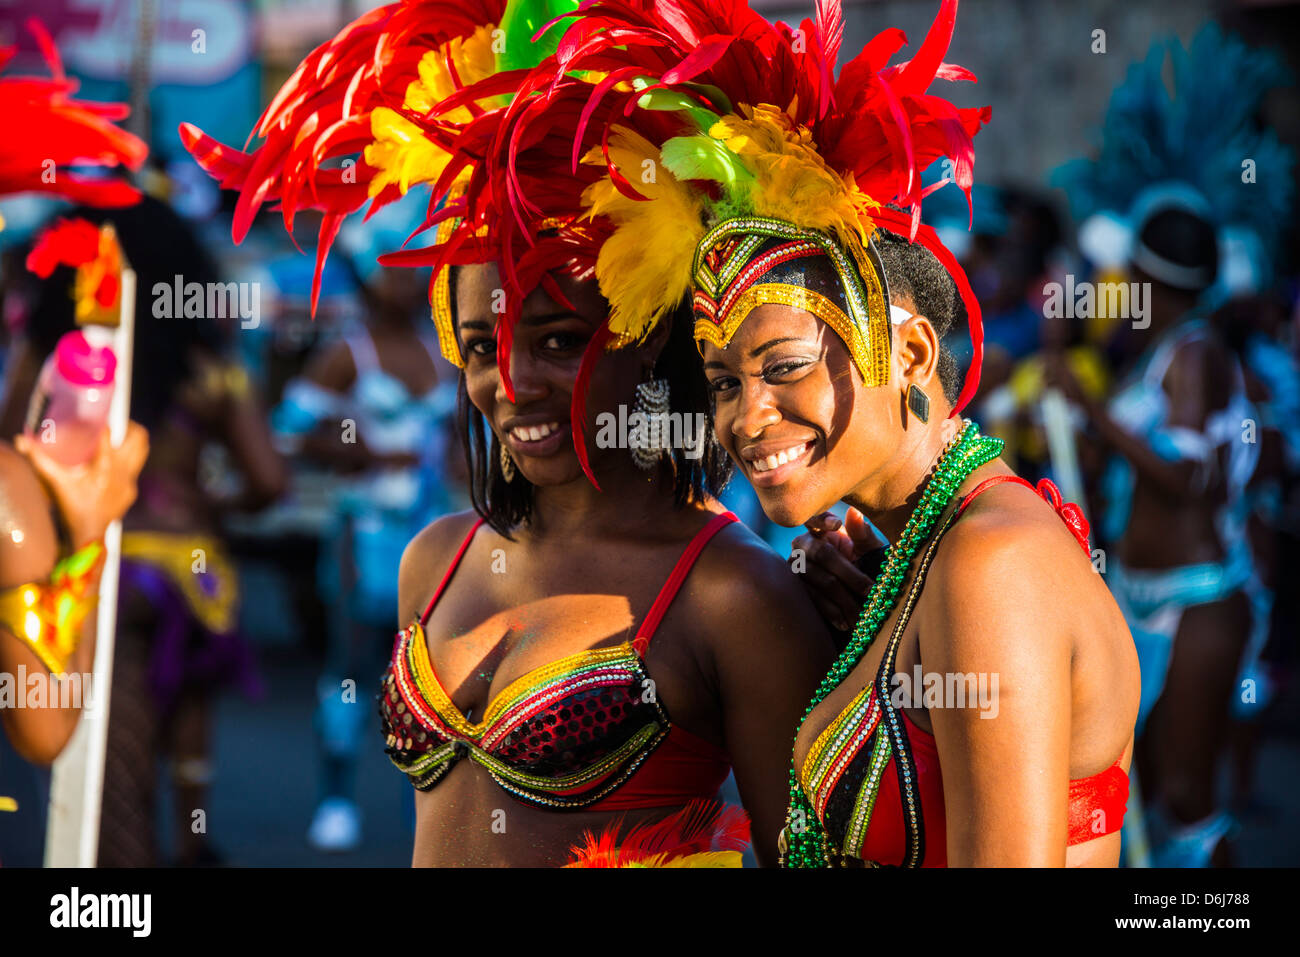 Carnaval à Basseterre, Saint Kitts, Saint Kitts et Nevis, Iles sous le vent, Antilles, Caraïbes, Amérique Centrale Banque D'Images